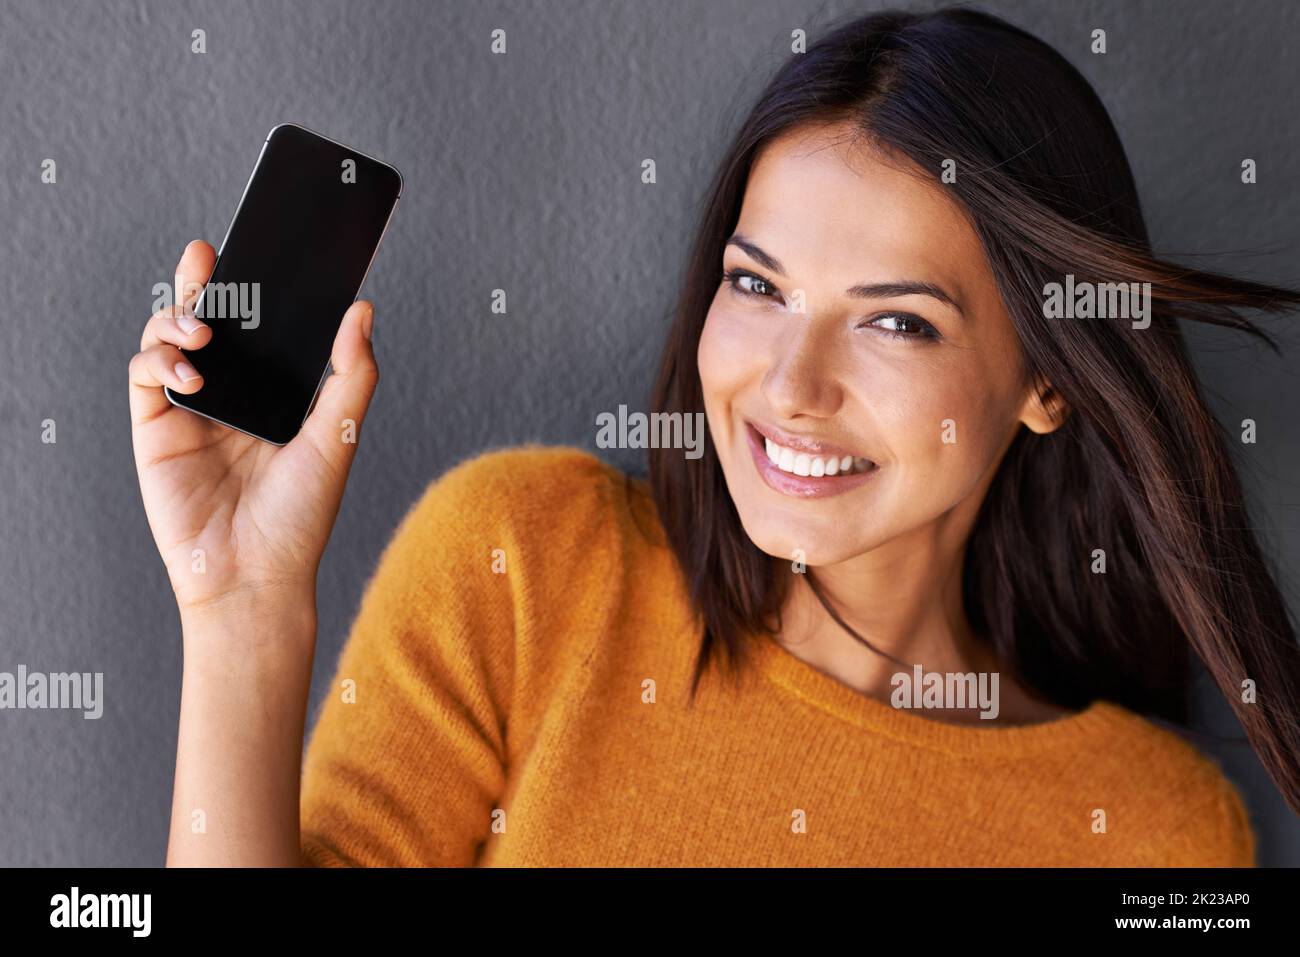 In questo modo è più facile rimanere connessi. Primo piano ritratto di una giovane donna attraente con un telefono cellulare. Foto Stock